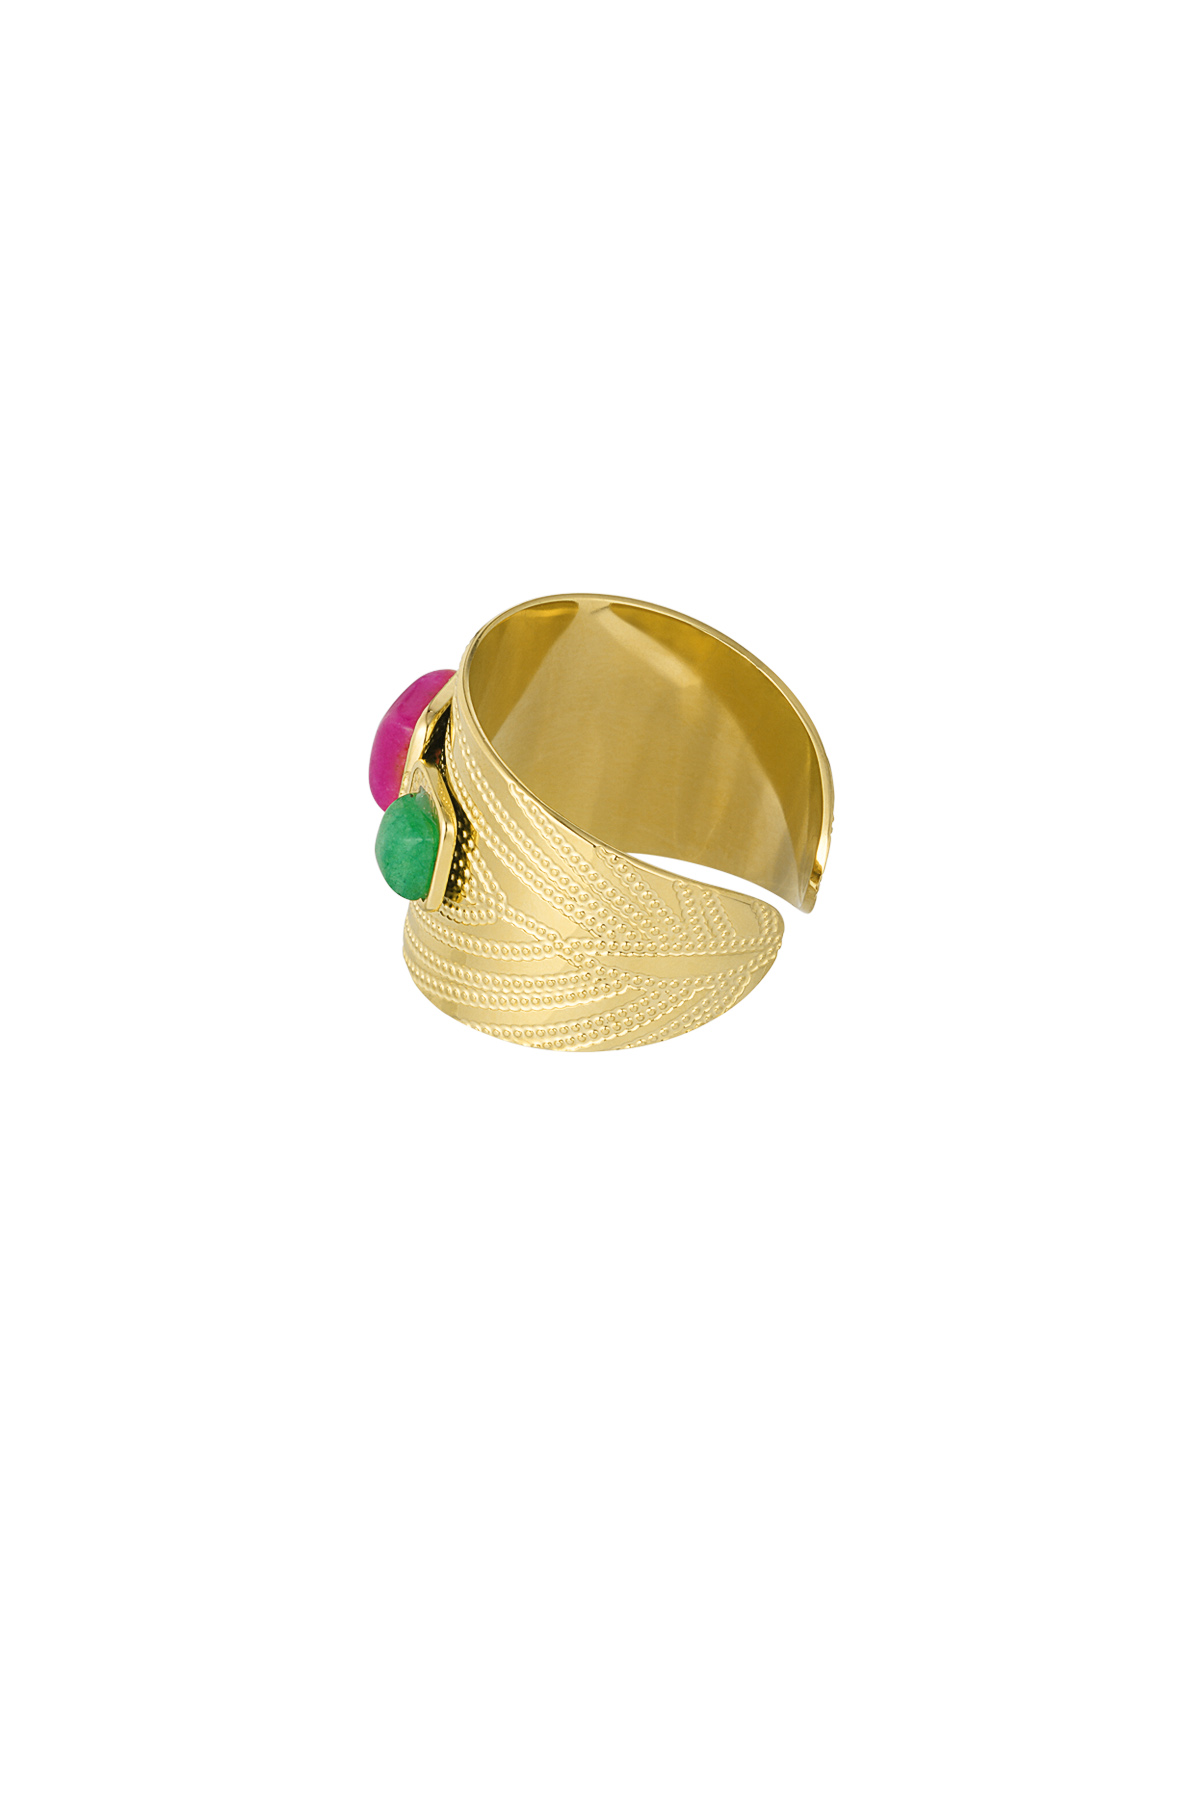 Statement-Ring mit farbigen Steinen – Gold  Bild4